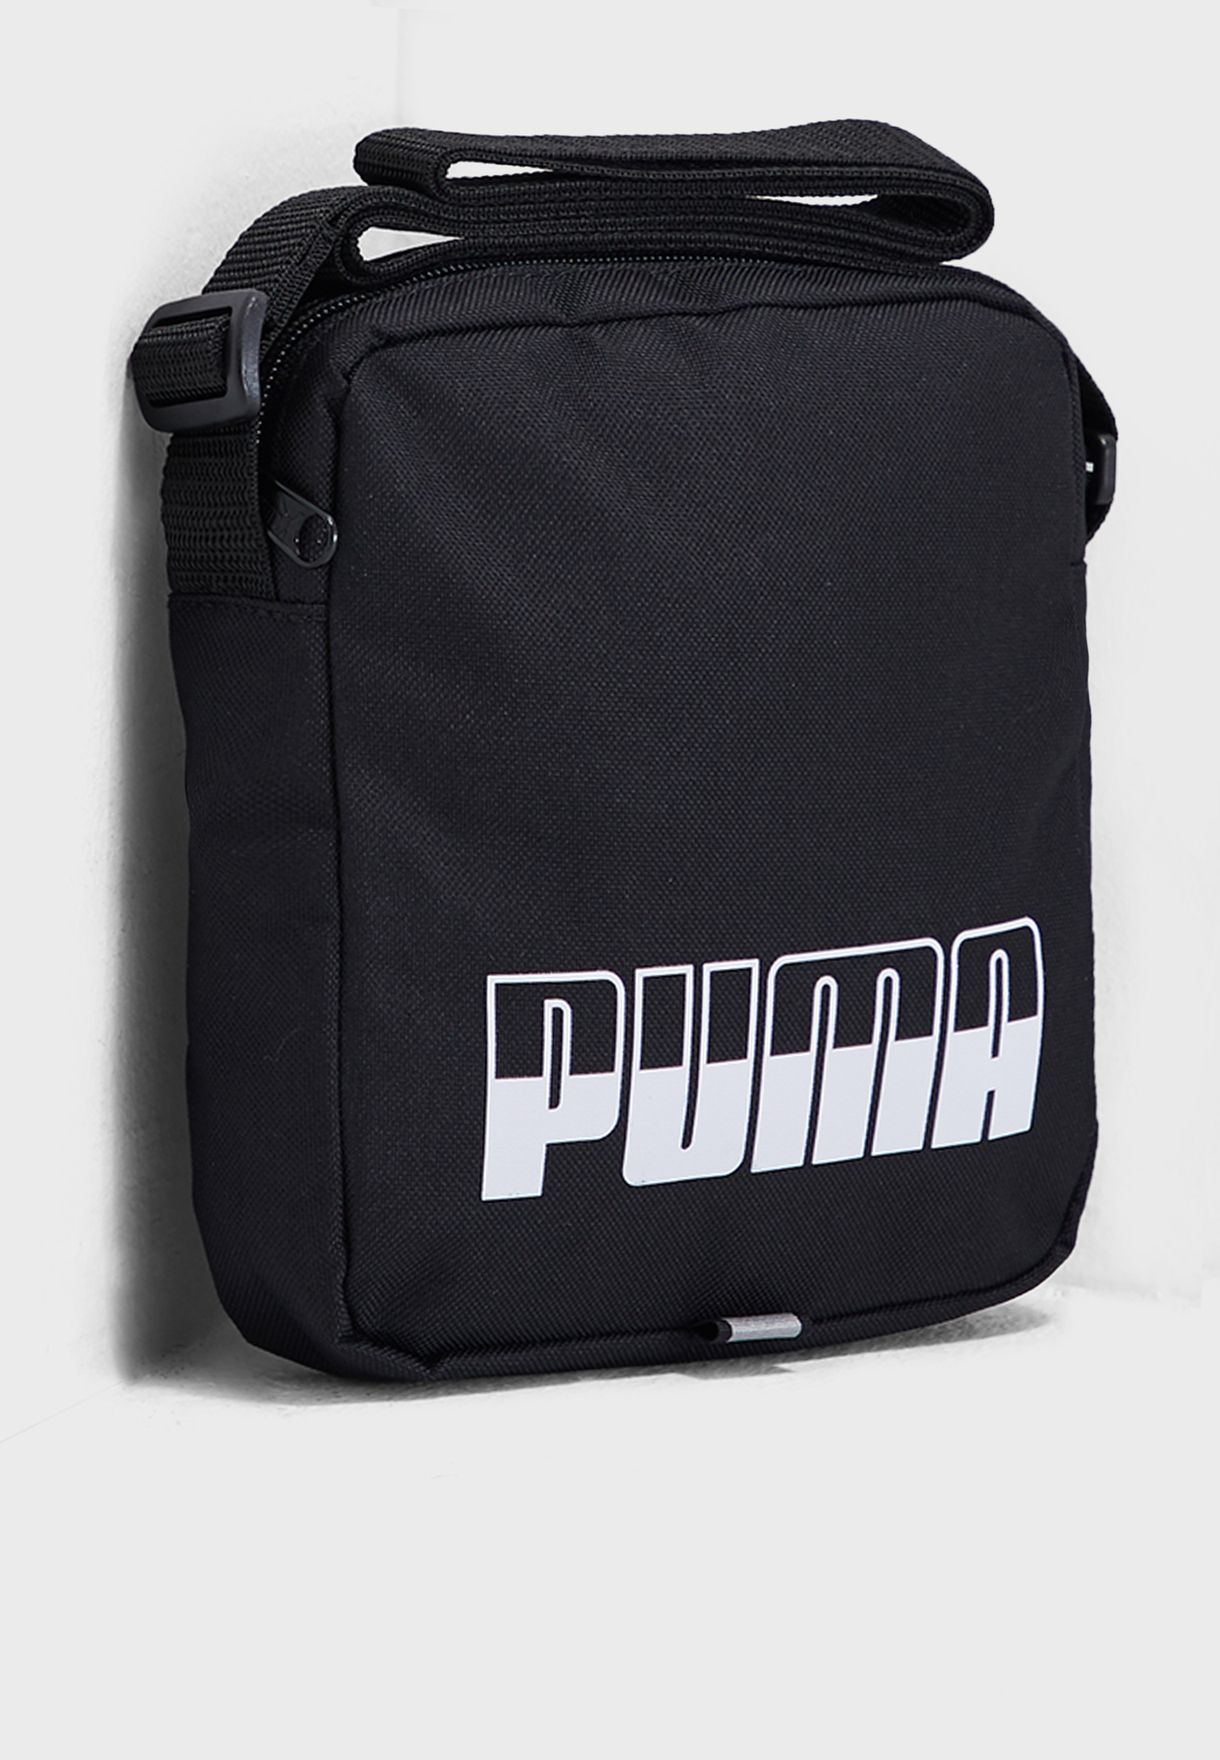 puma messenger bag black